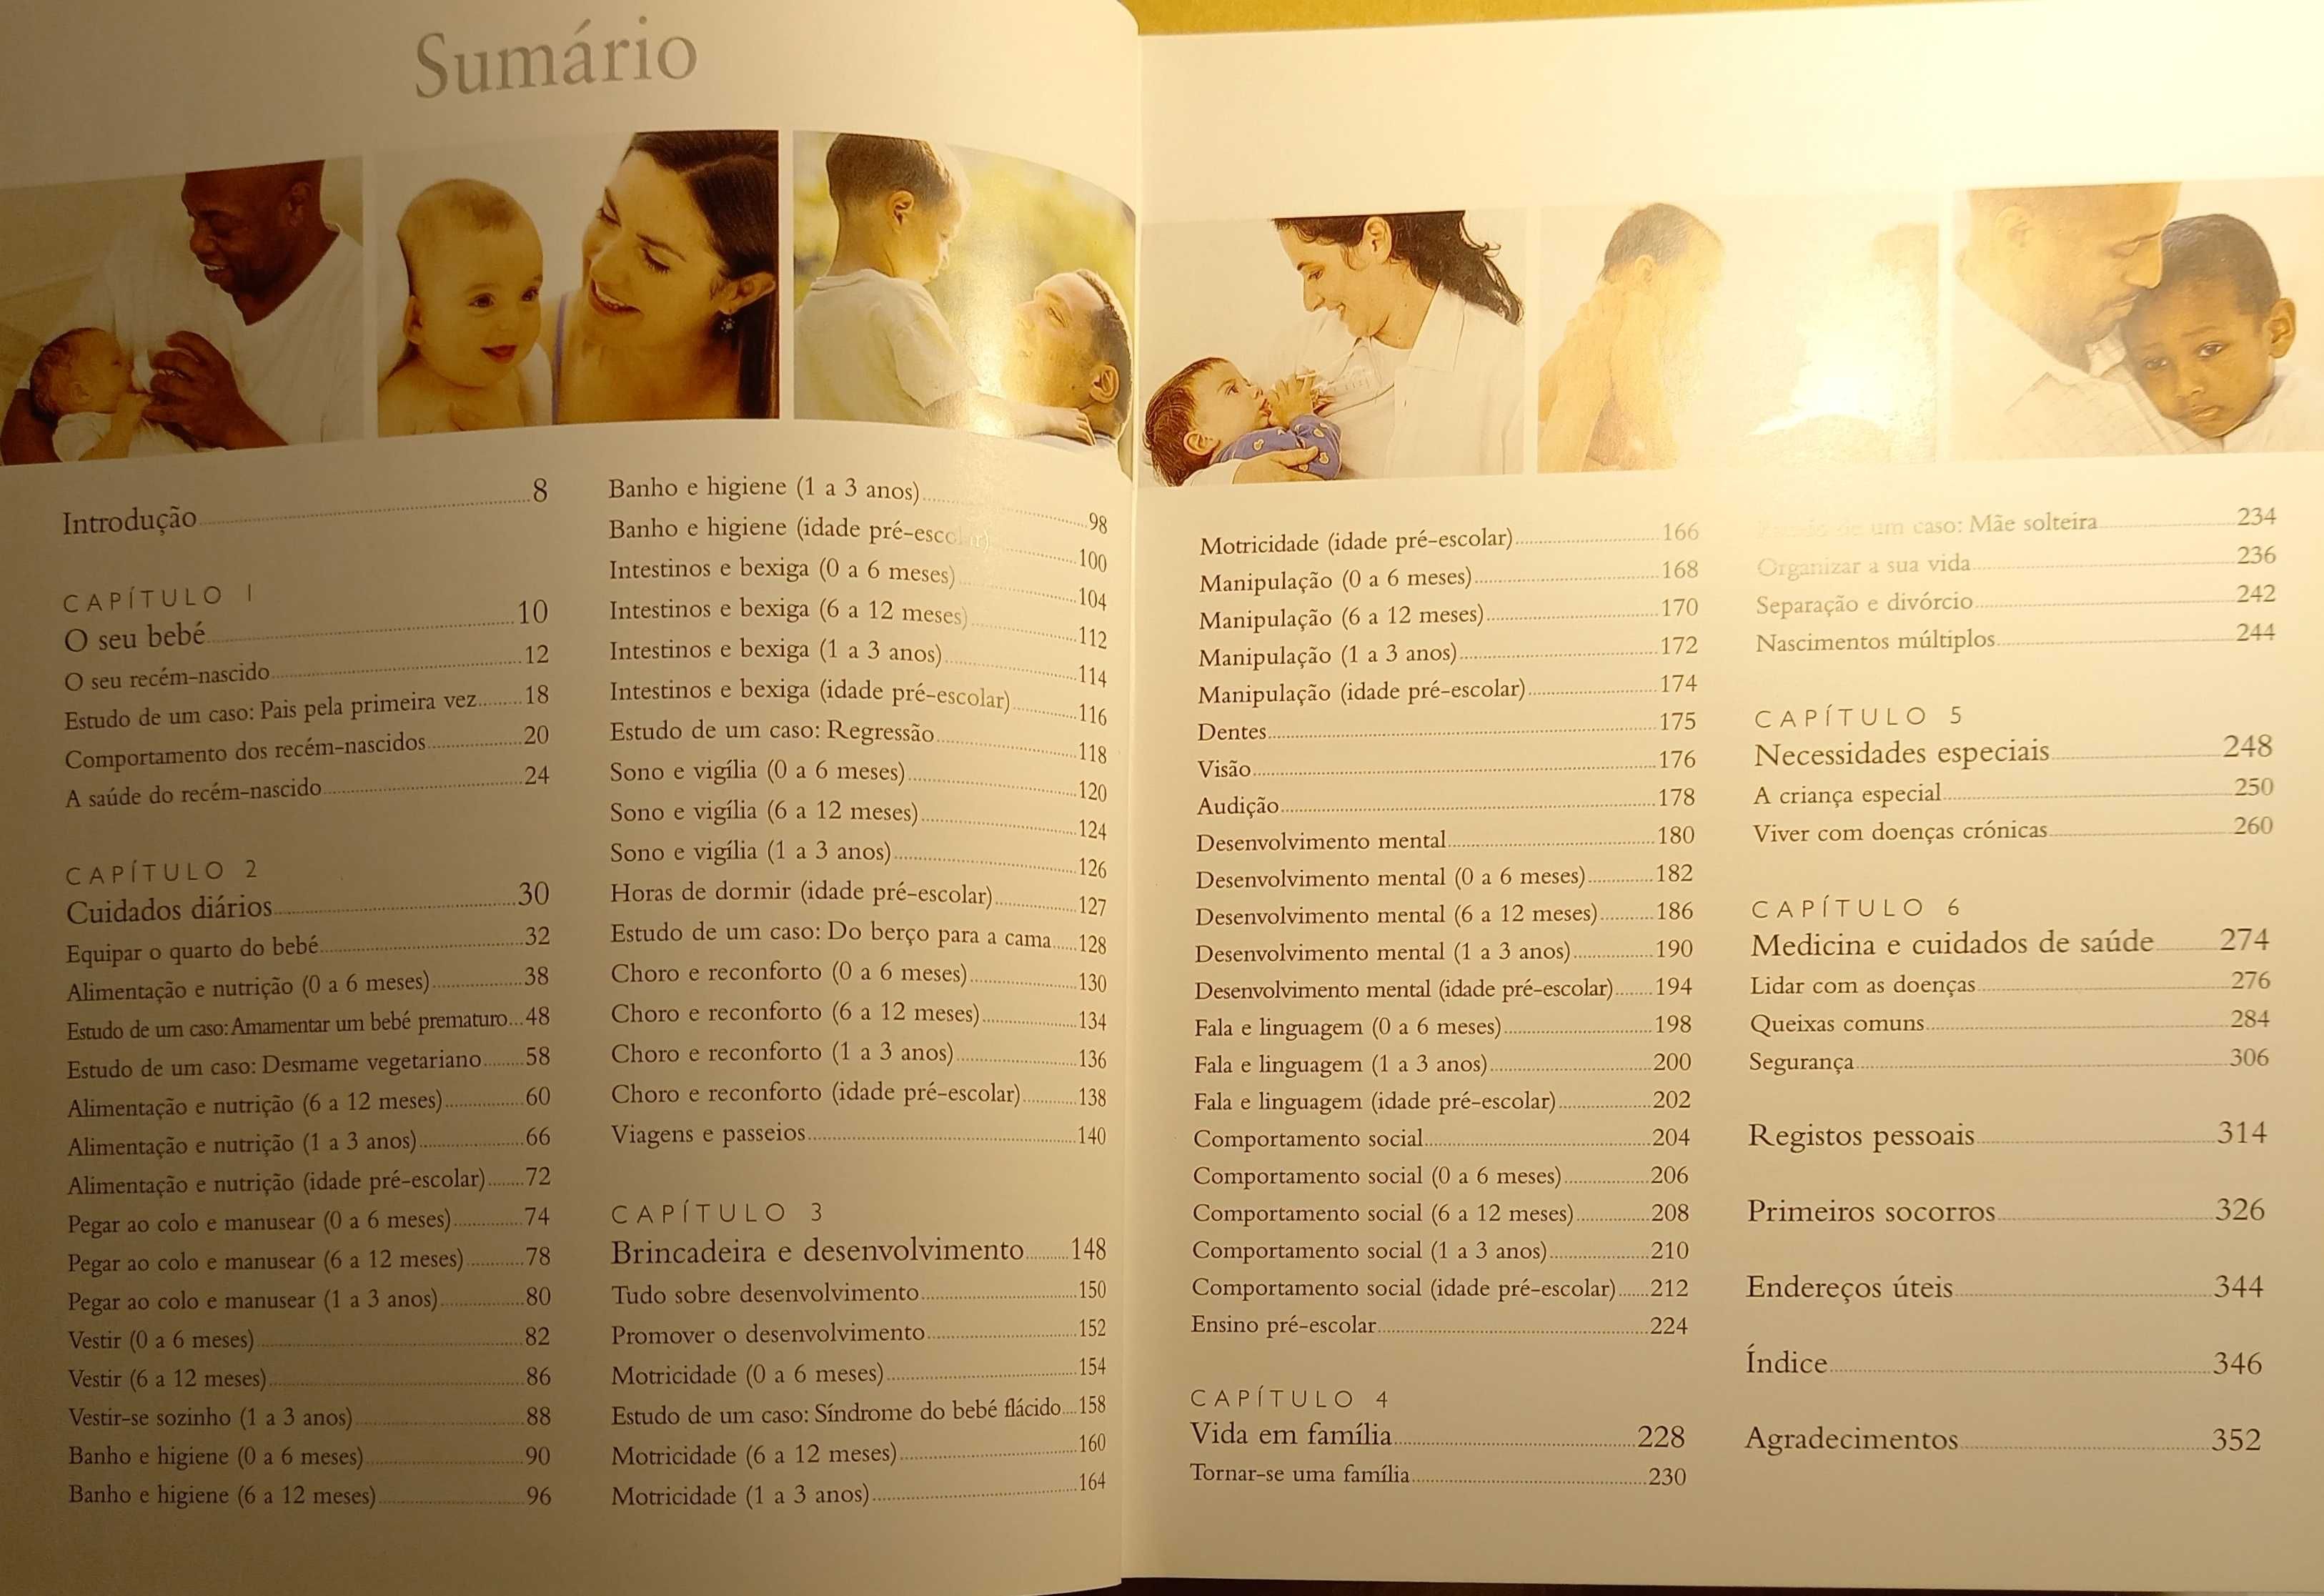 Guia Completo para Cuidar de Bebés e Crianças (DK,capa dura, 2006)